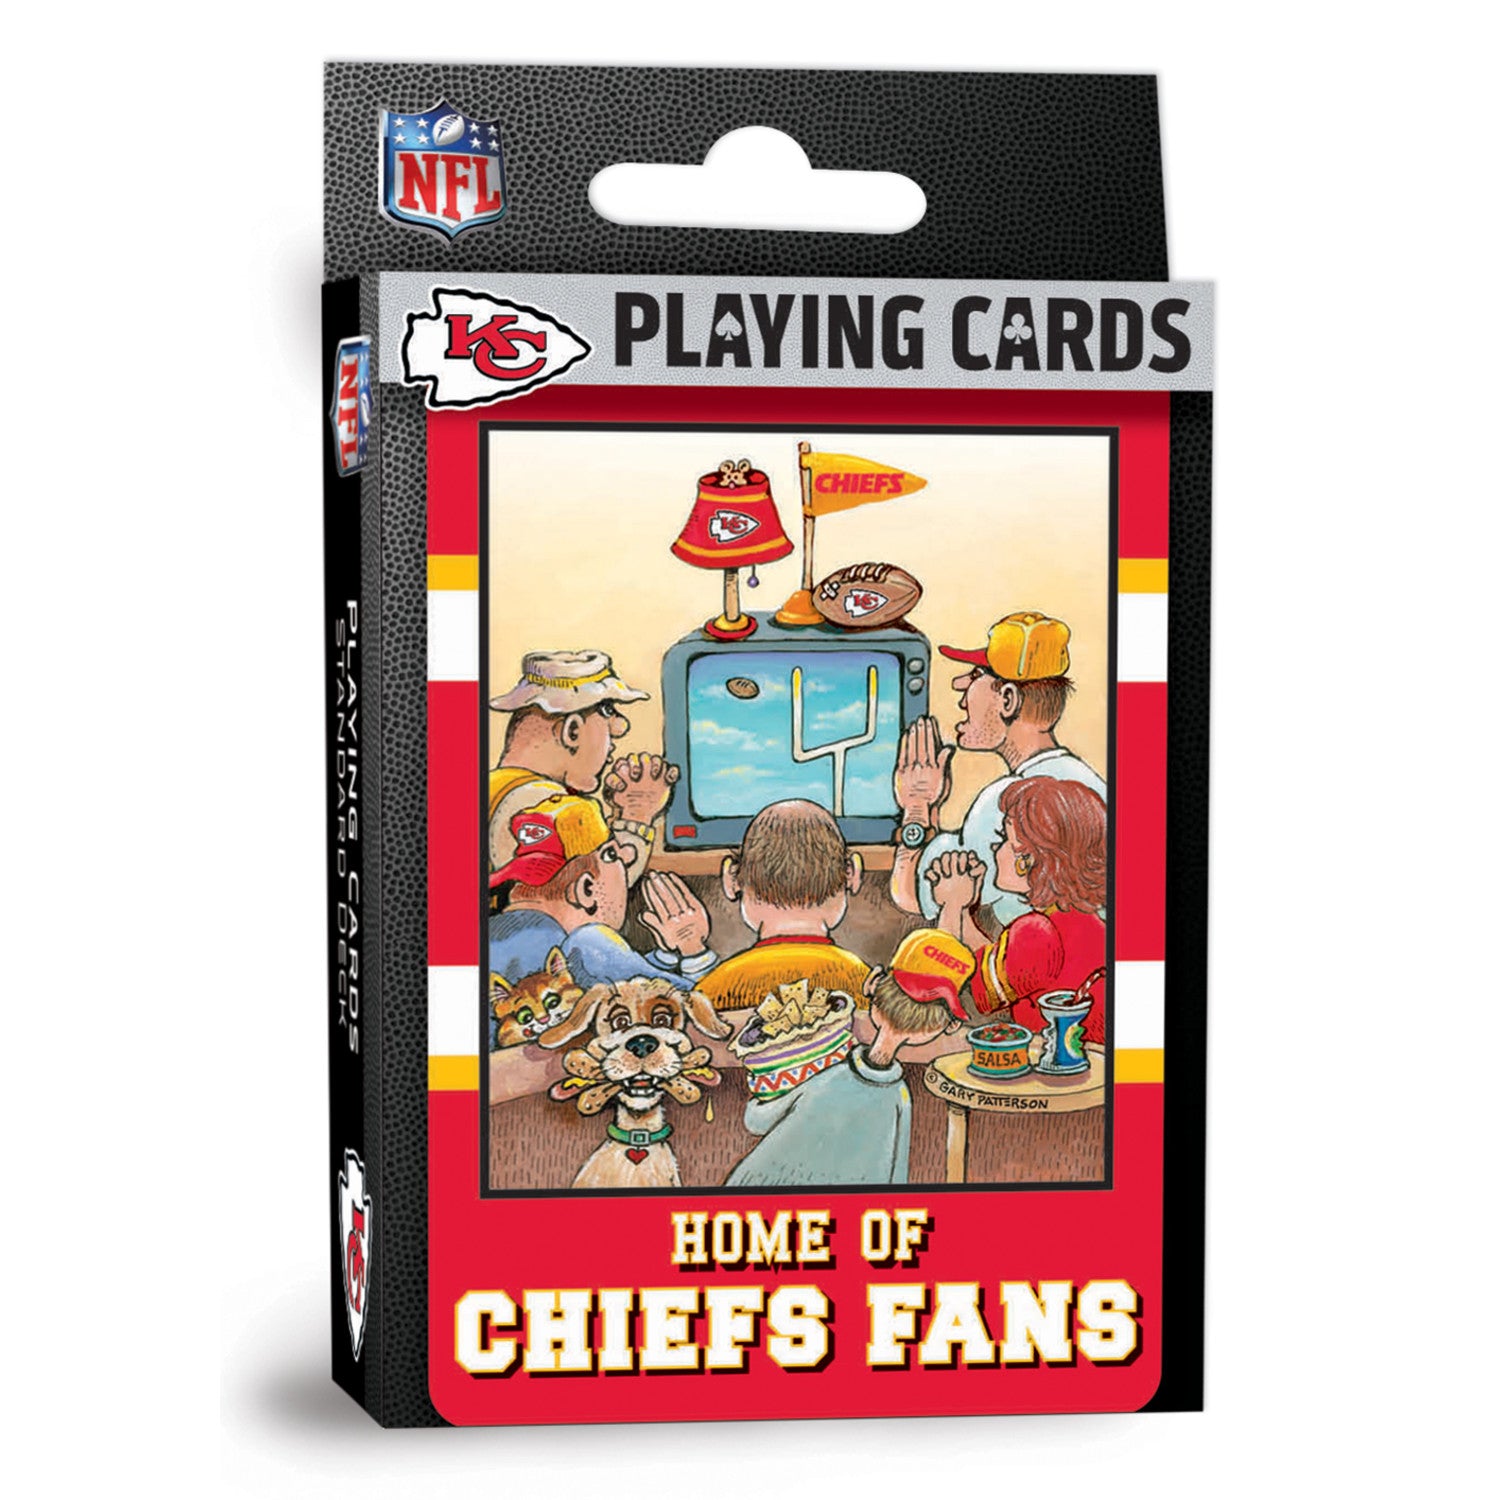 Kansas City Chiefs Fan Deck Playing Cards - 54 Card Deck